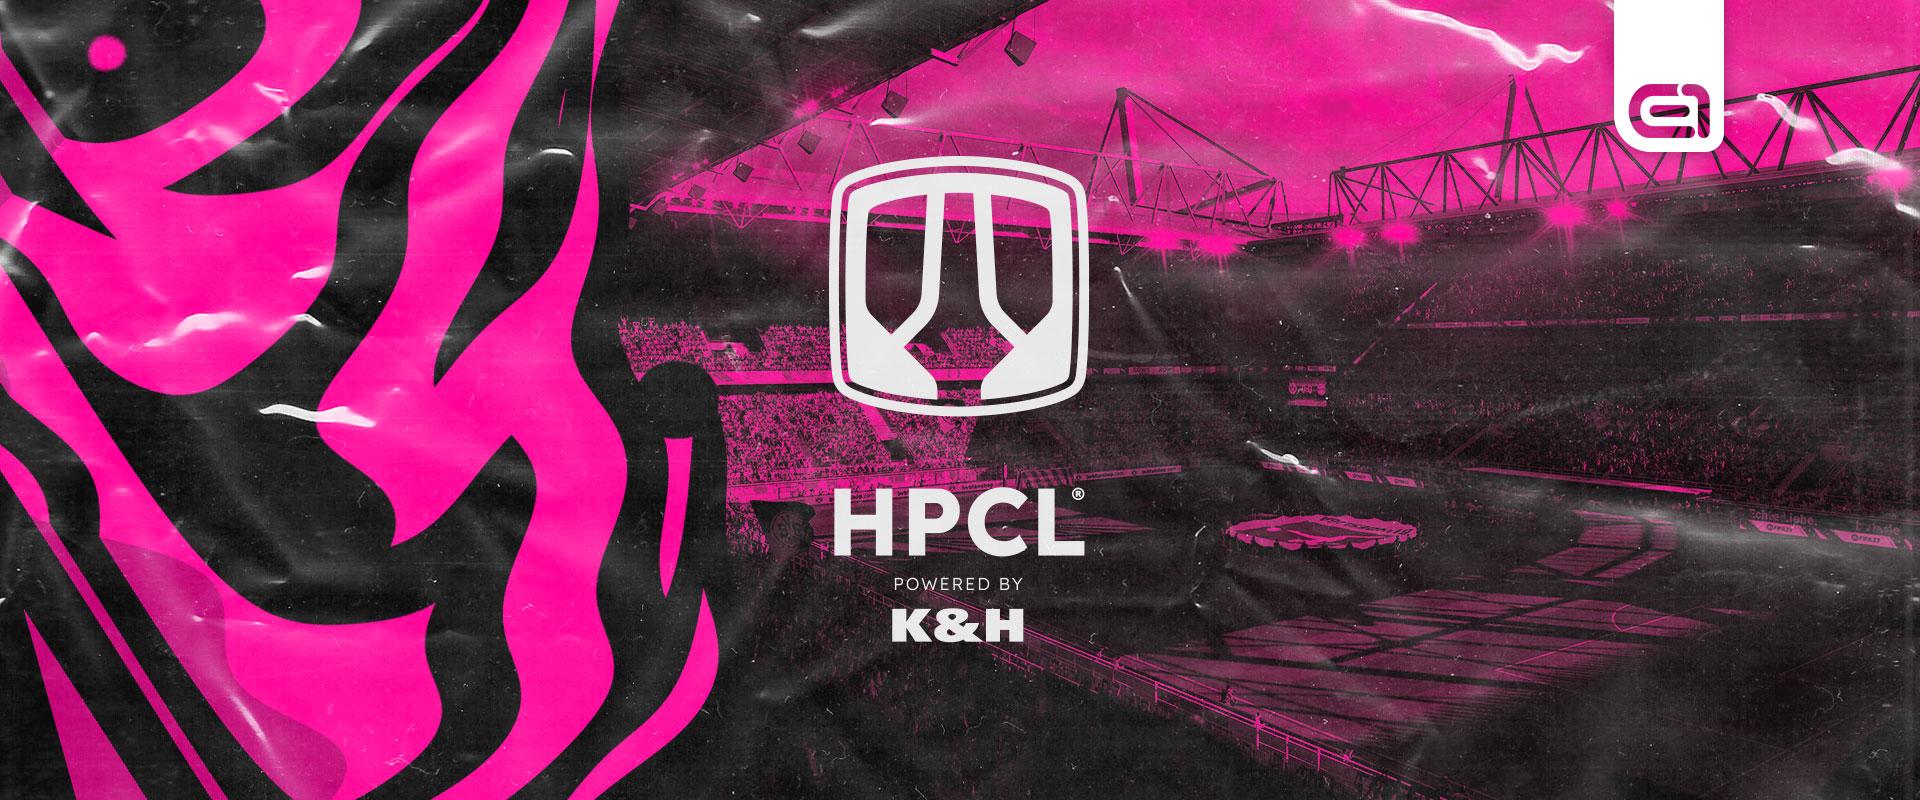 HPCL powered by K&H: Ismét új bajnokot avattak a szezon végén